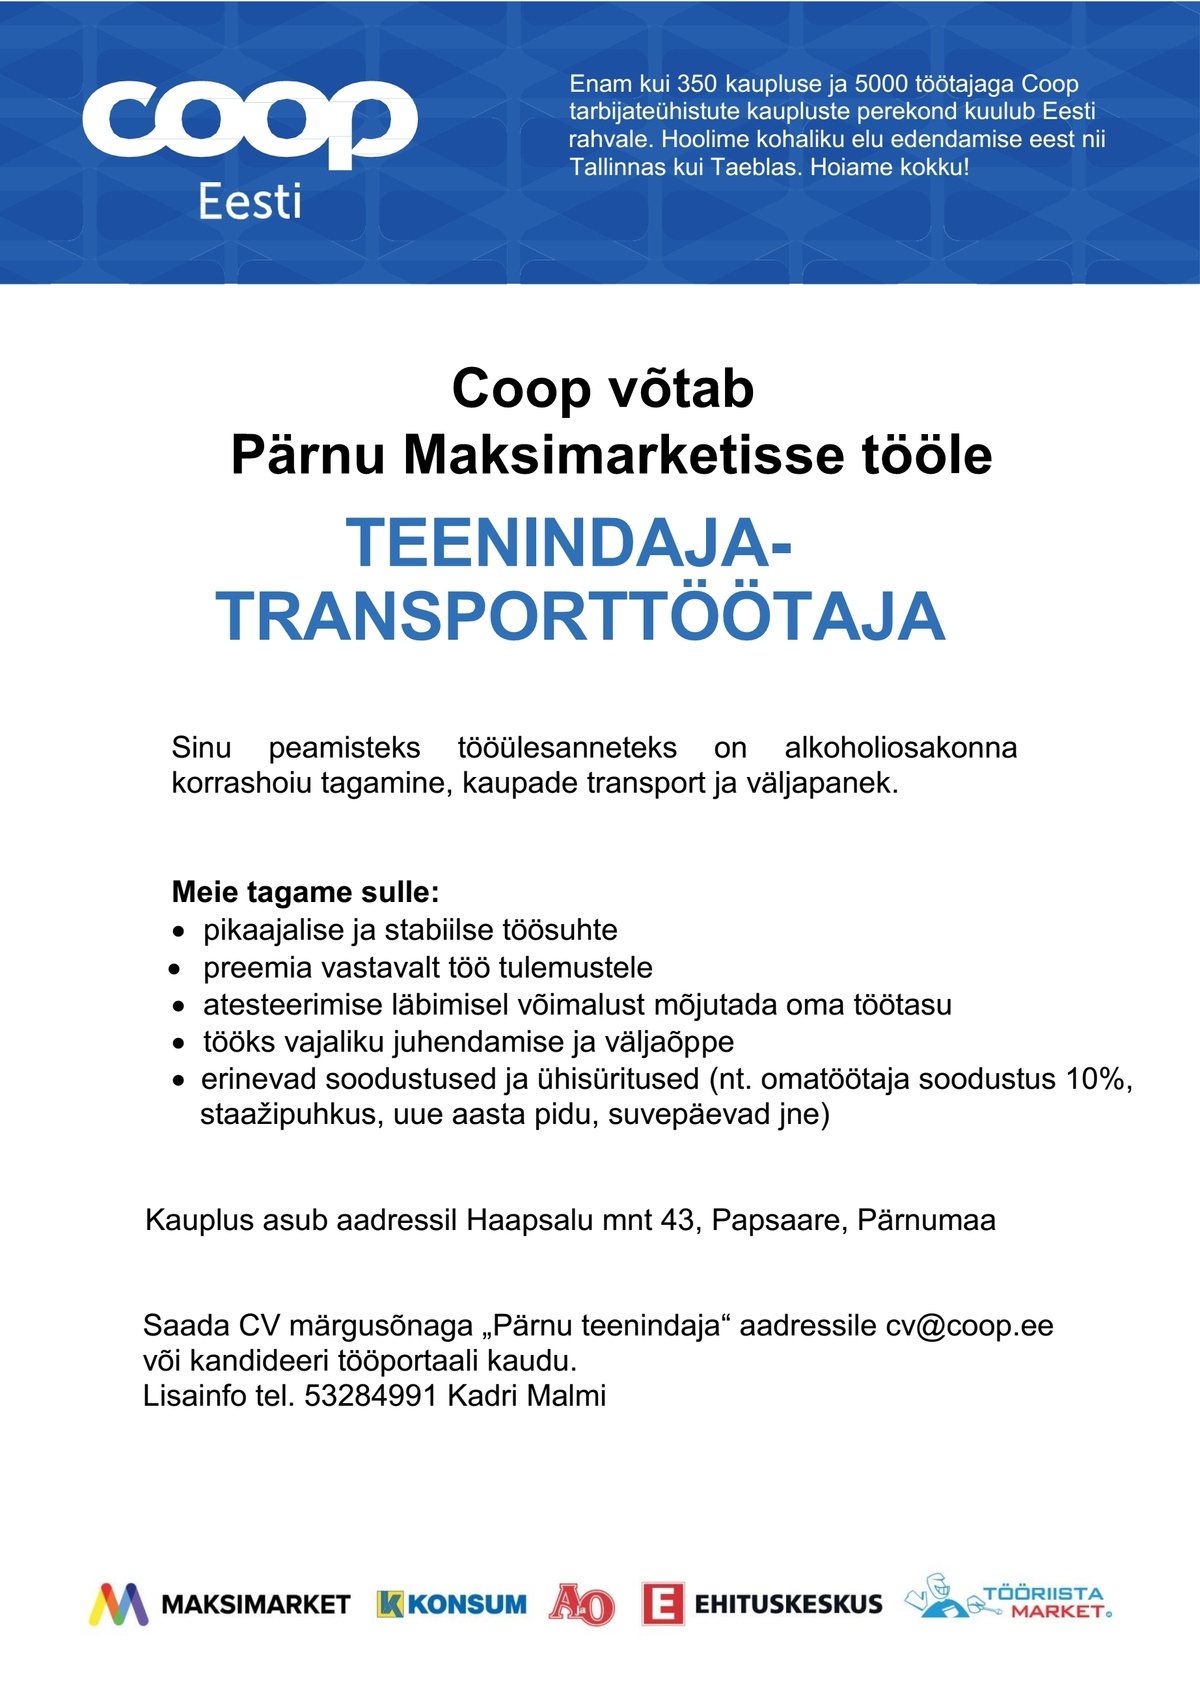 Coop Kaubanduse AS Teenindaja-transporttöötaja (Pärnu Maksimarket)